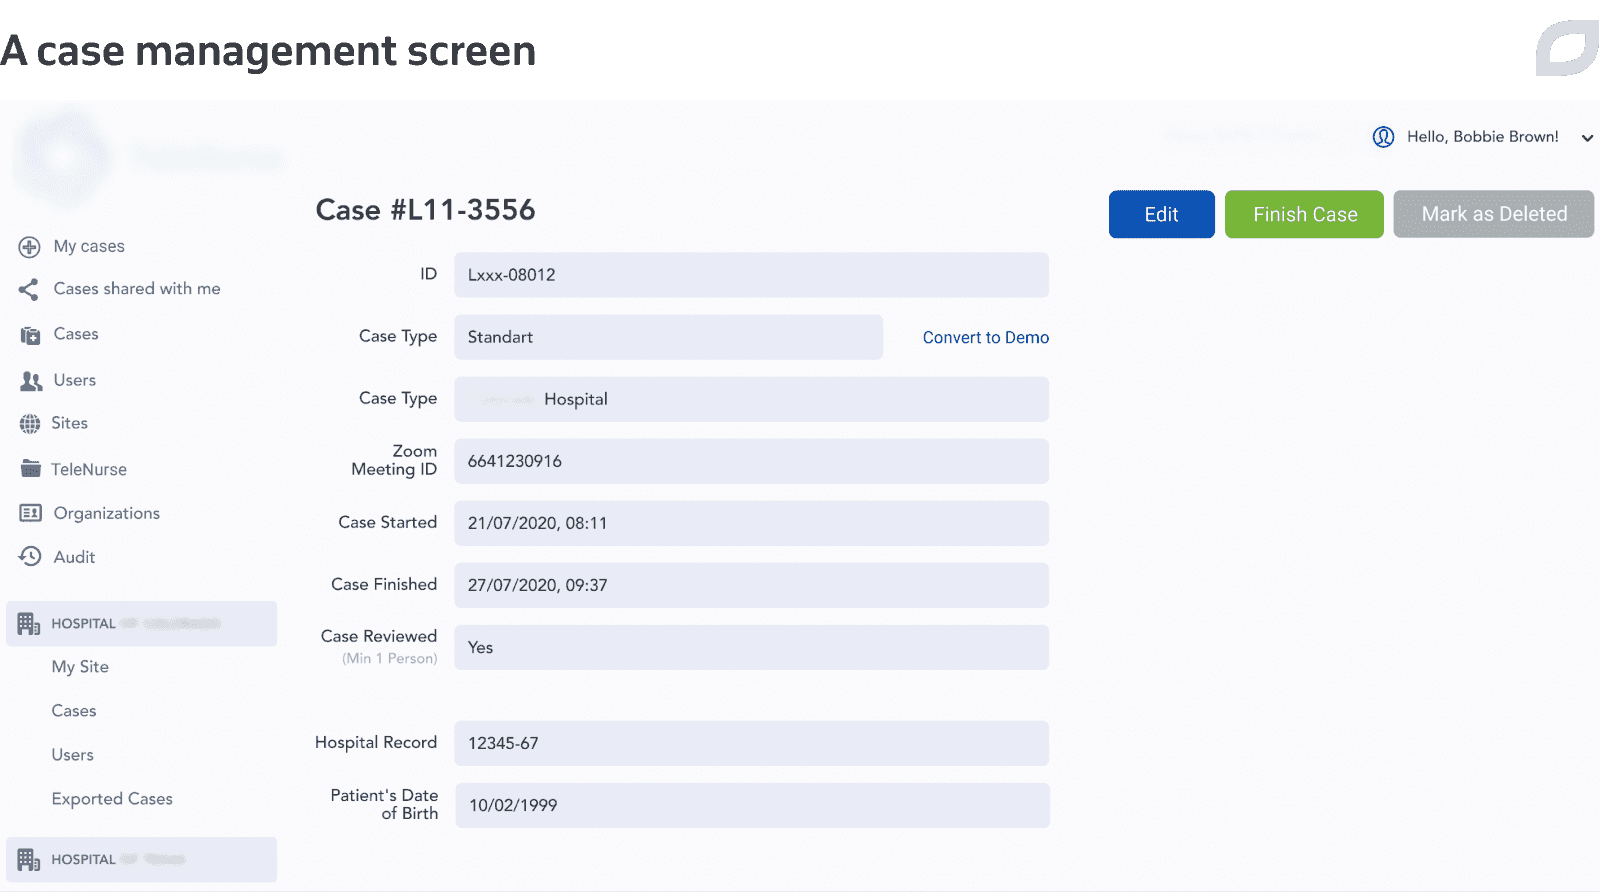 A case management screen